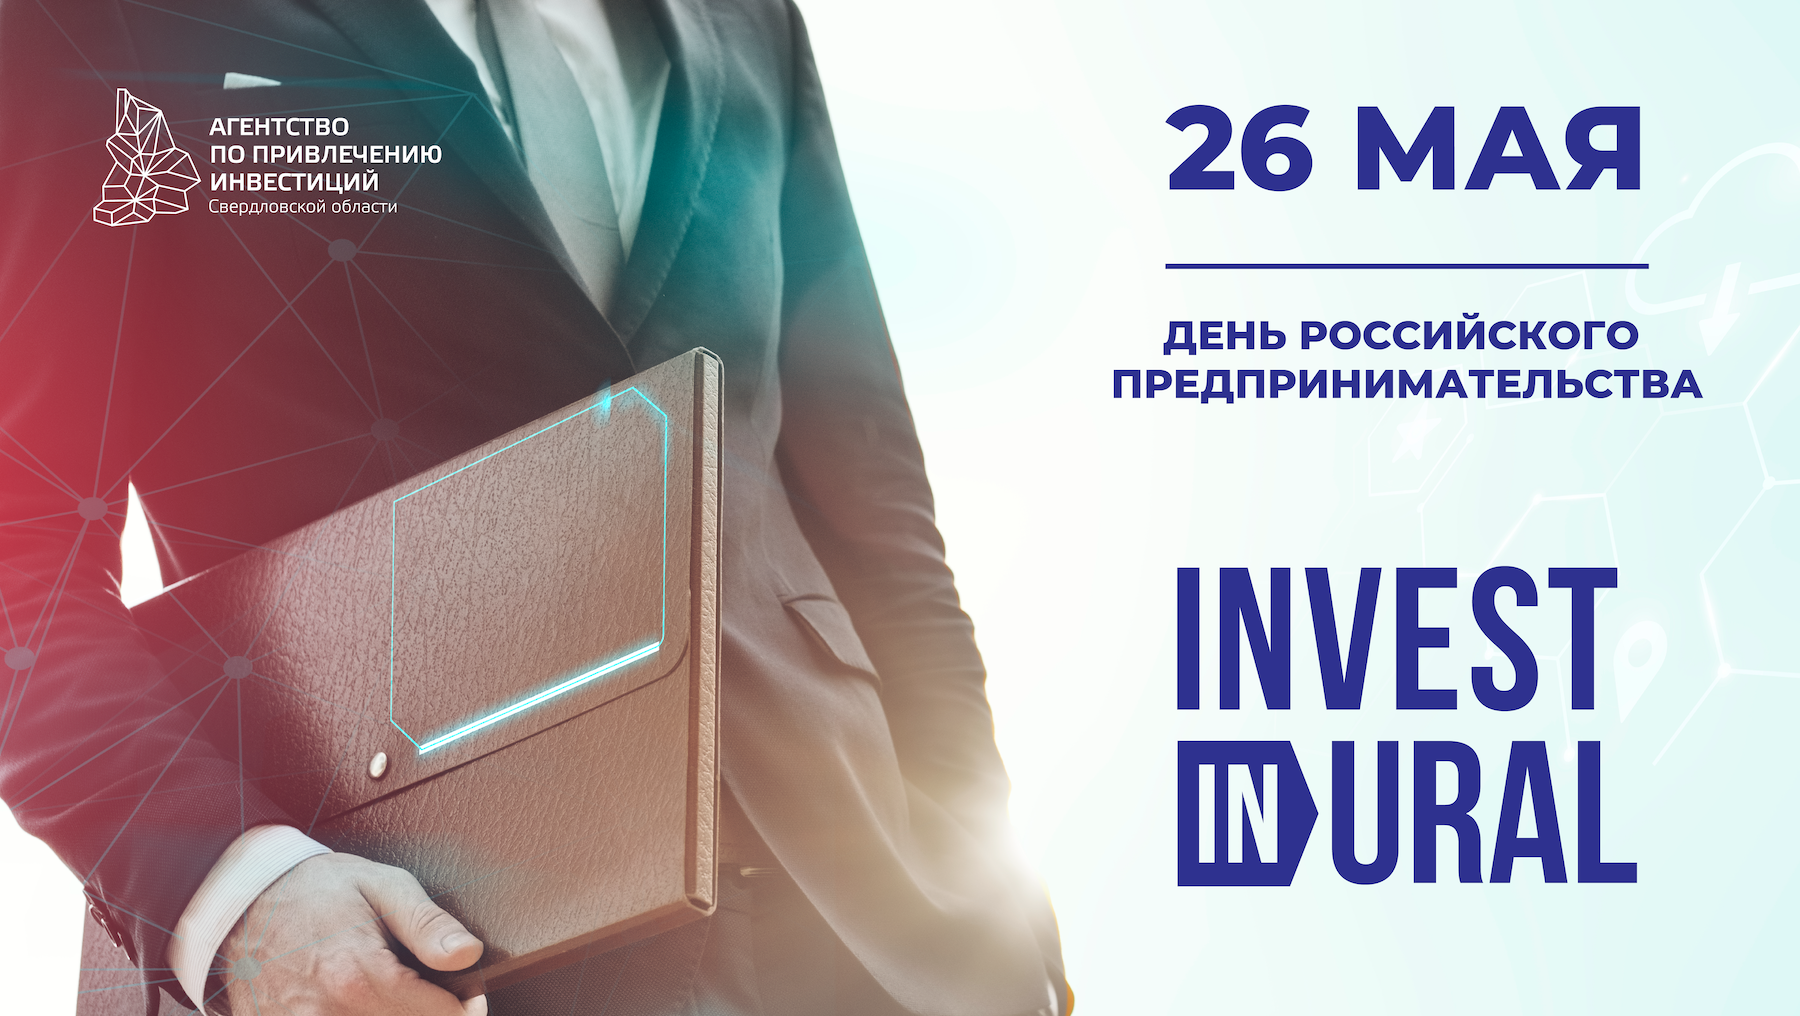 Поздравляем вас с профессиональным праздником — Днем российского предпринимательства! 